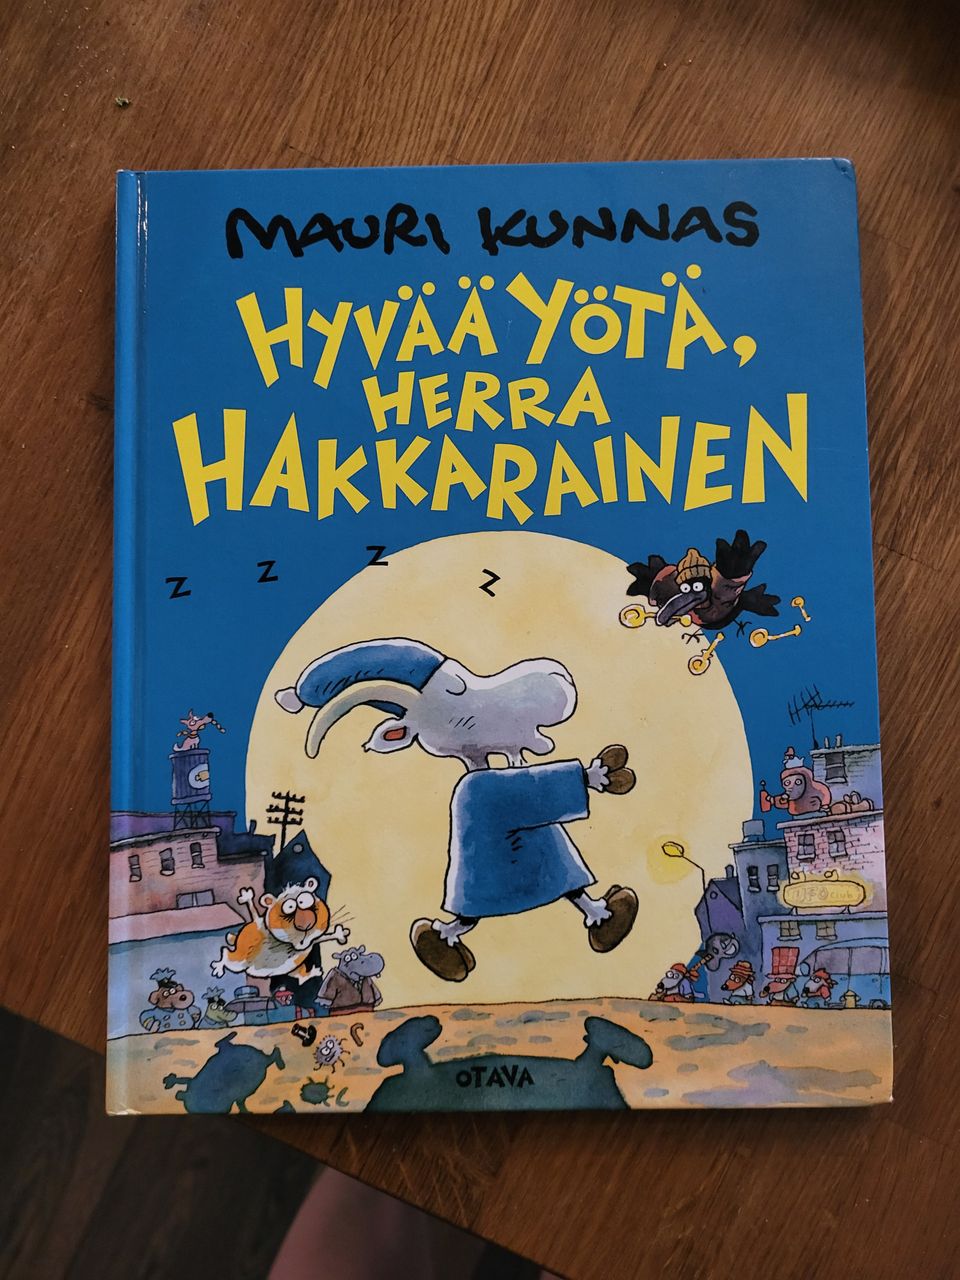 Mauri Kunnaksen kirjoja